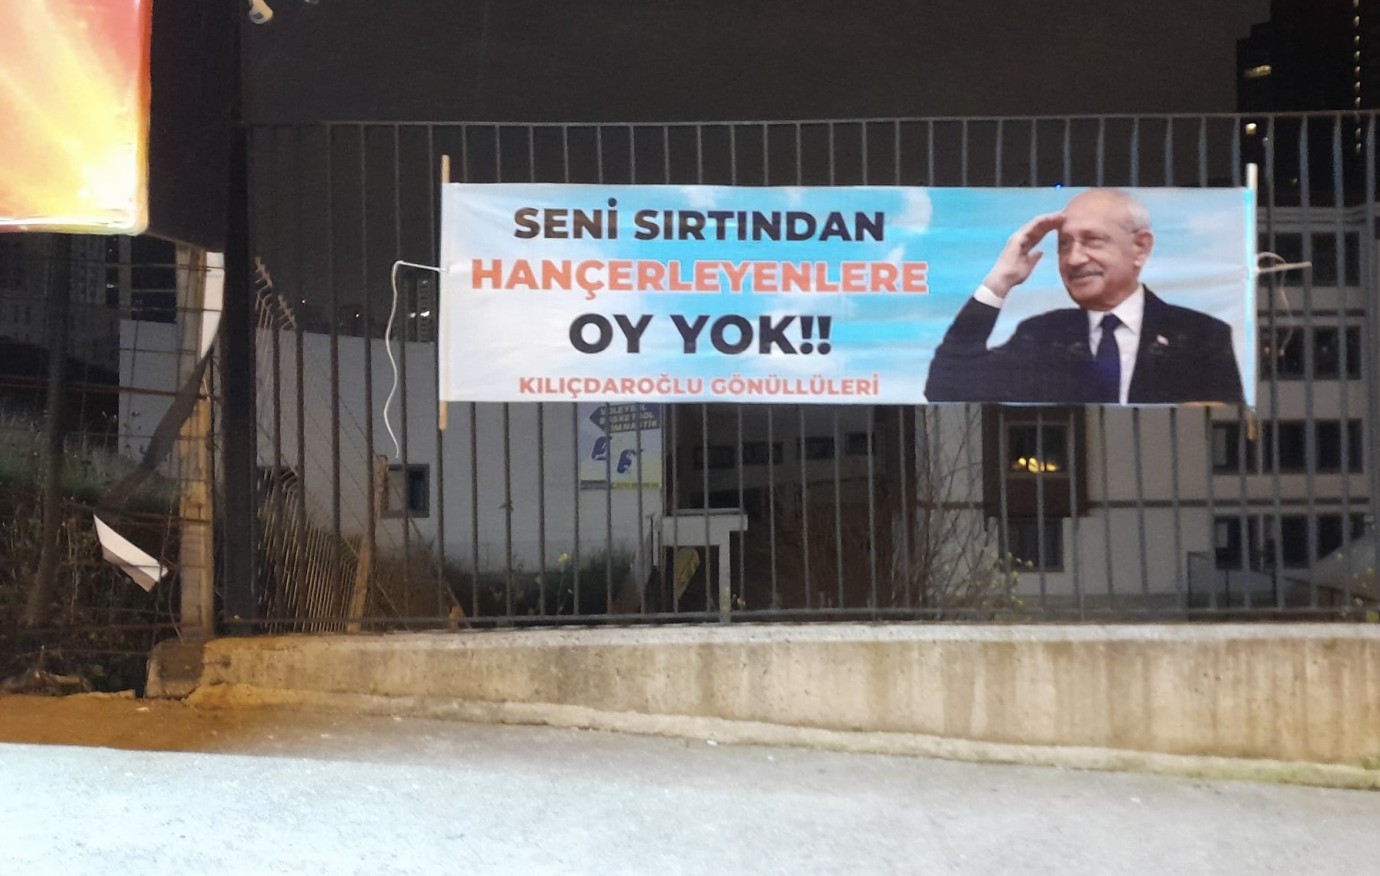 Adana'ya bu afişleri kim astırdı?